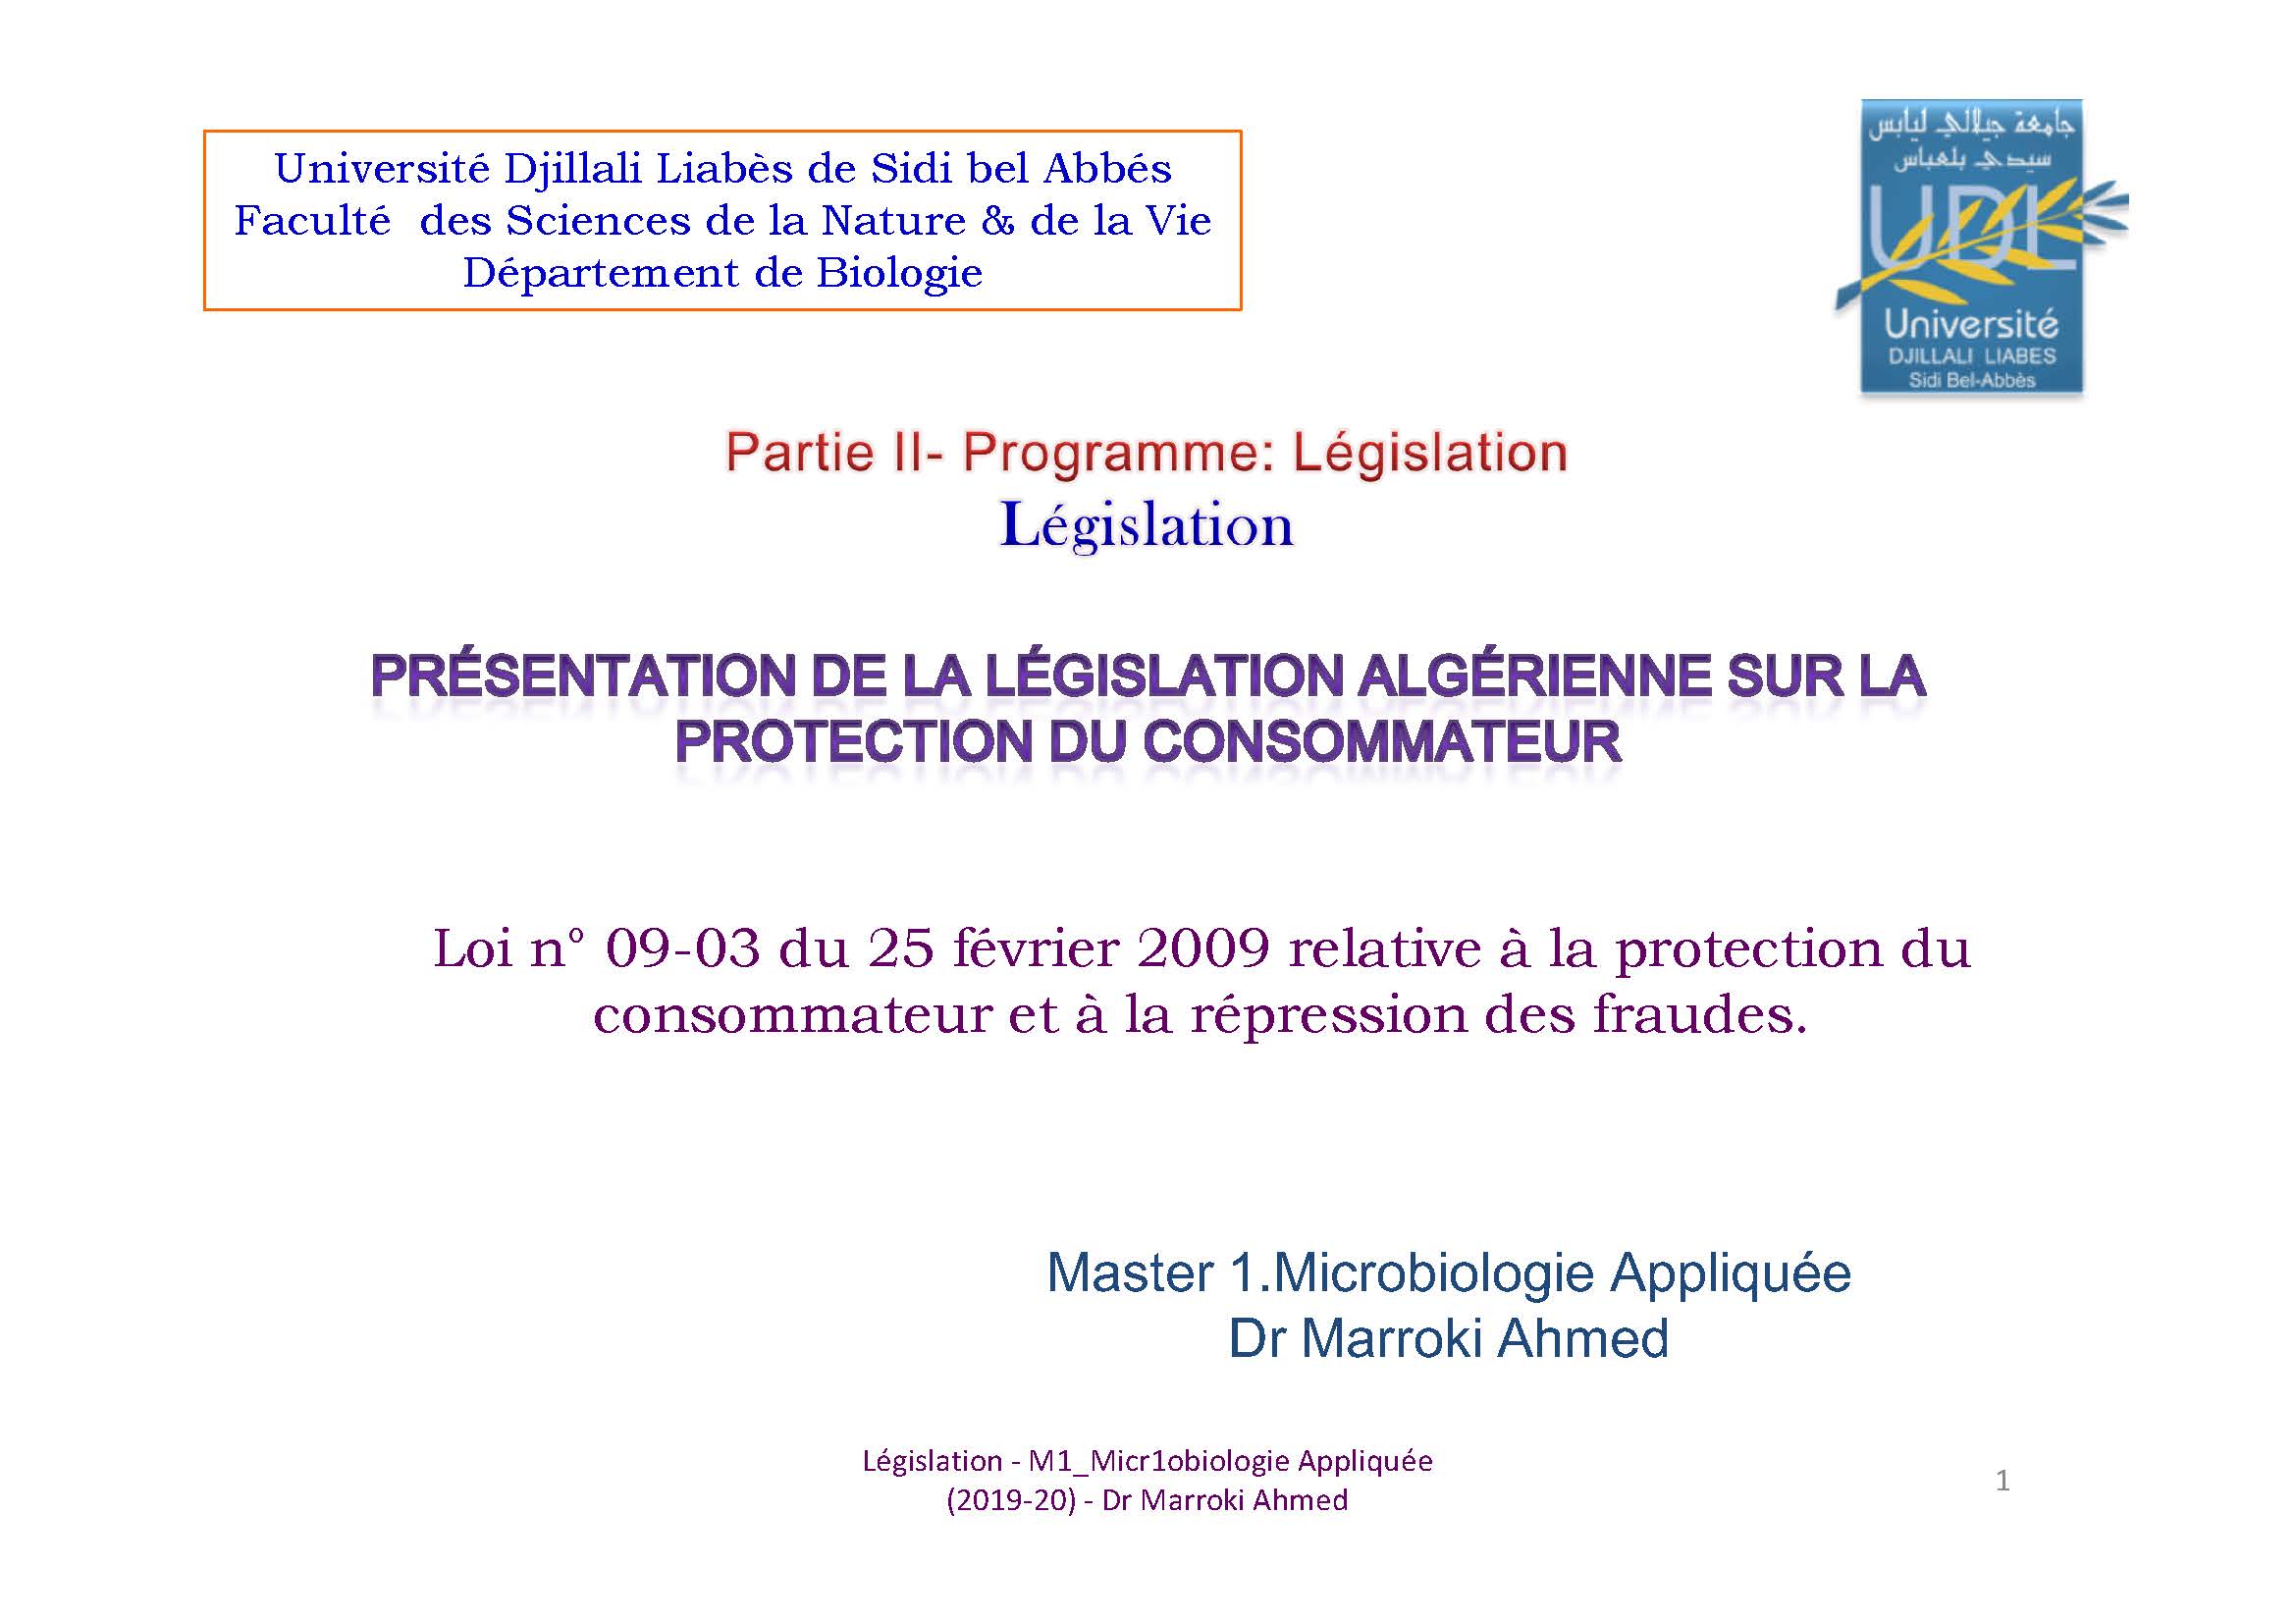 Loi n° 09-03 du 25 février 2009 relative à la protection du consommateur et à la répression des fraudes.